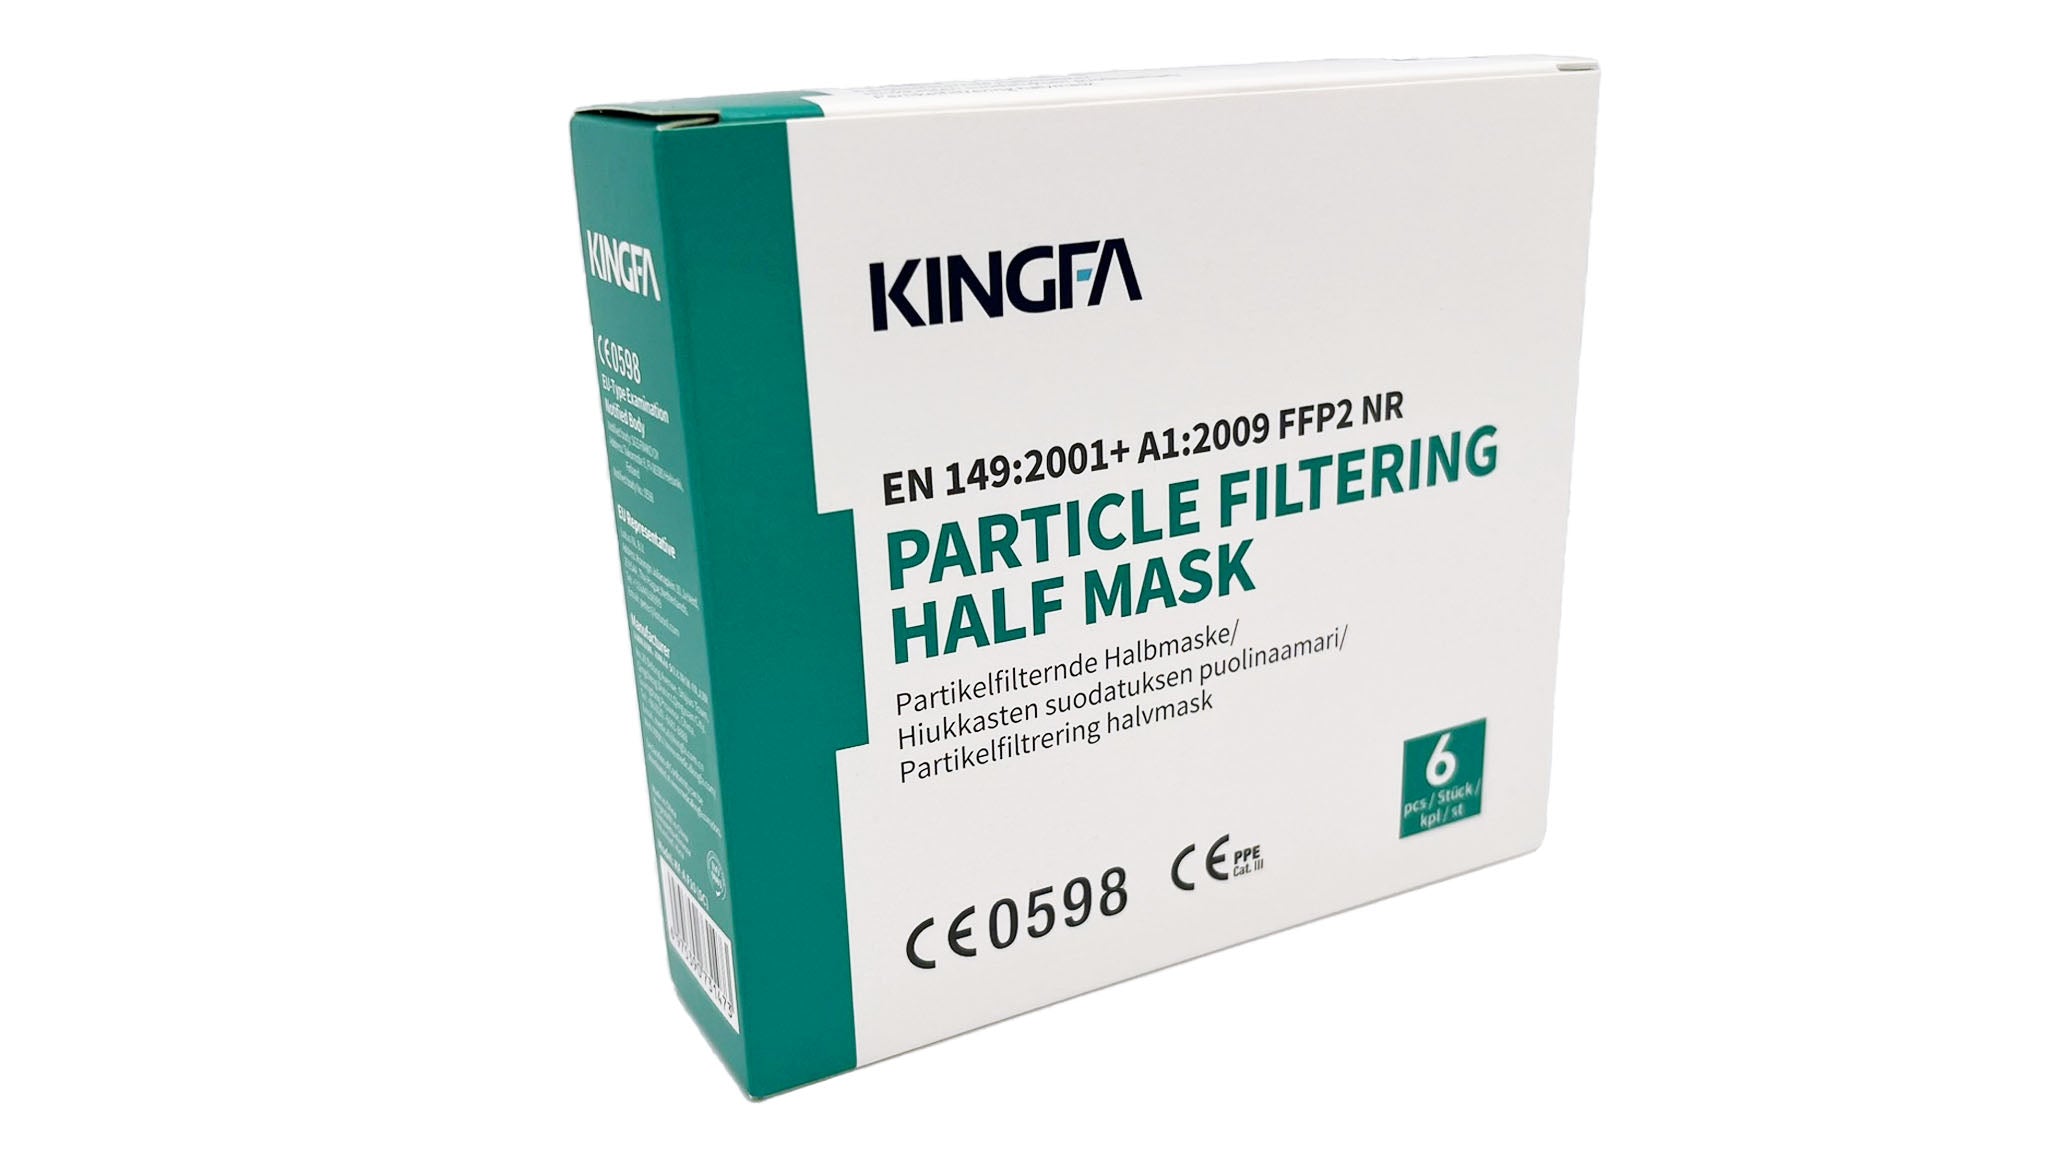 Kingfa FFP2 Masken einzeln eingeschweißt (6 Masken je Box) - weiß/schwarz